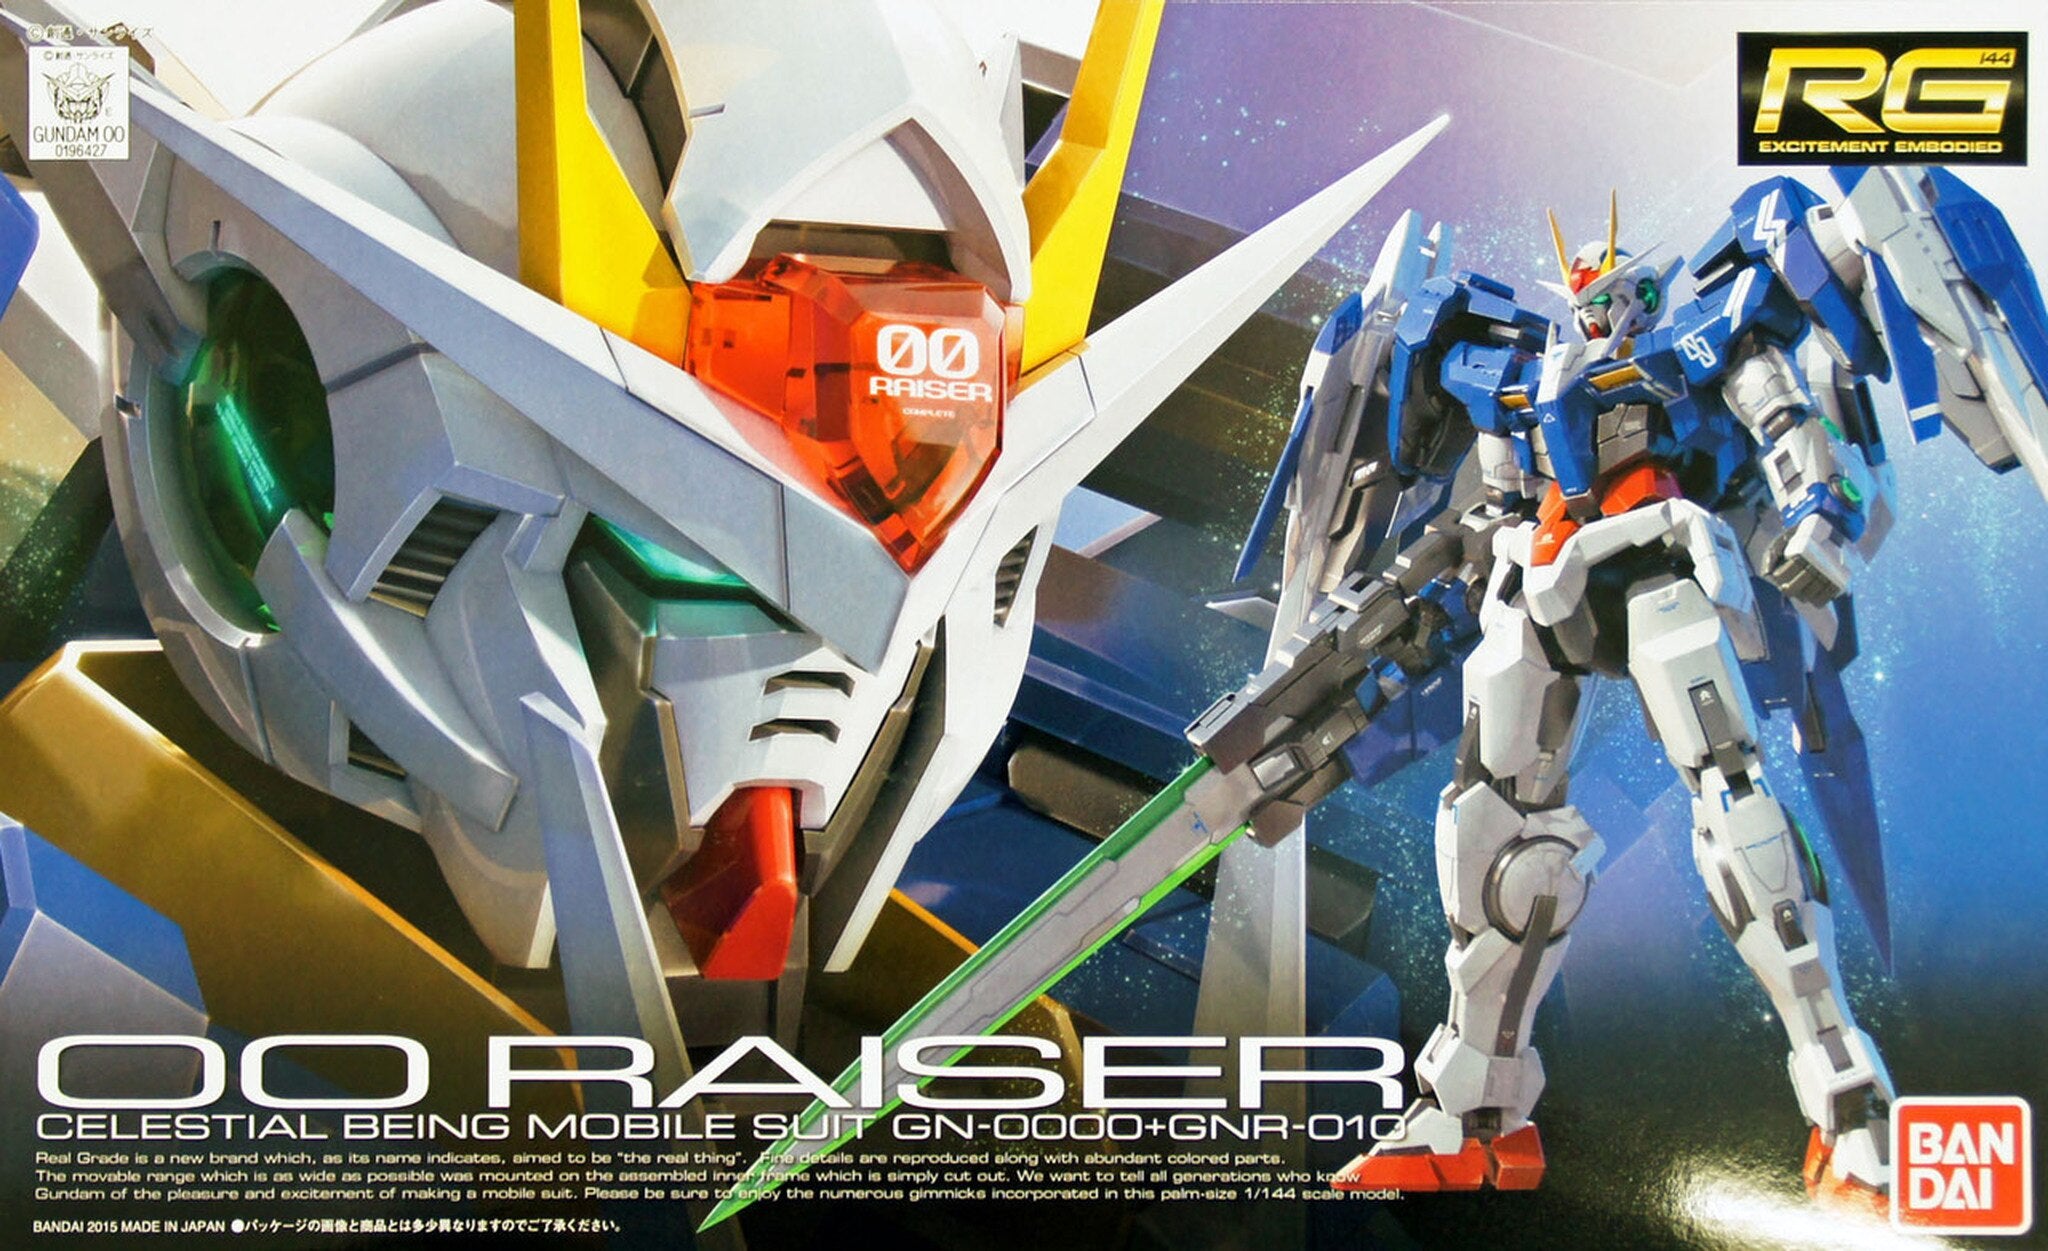 BANDAI 5061603 #18 00 Raiser Celestial Being Mobile Suit GN-0000+GNR-010 RG Model Kit, from "Gundam 00"